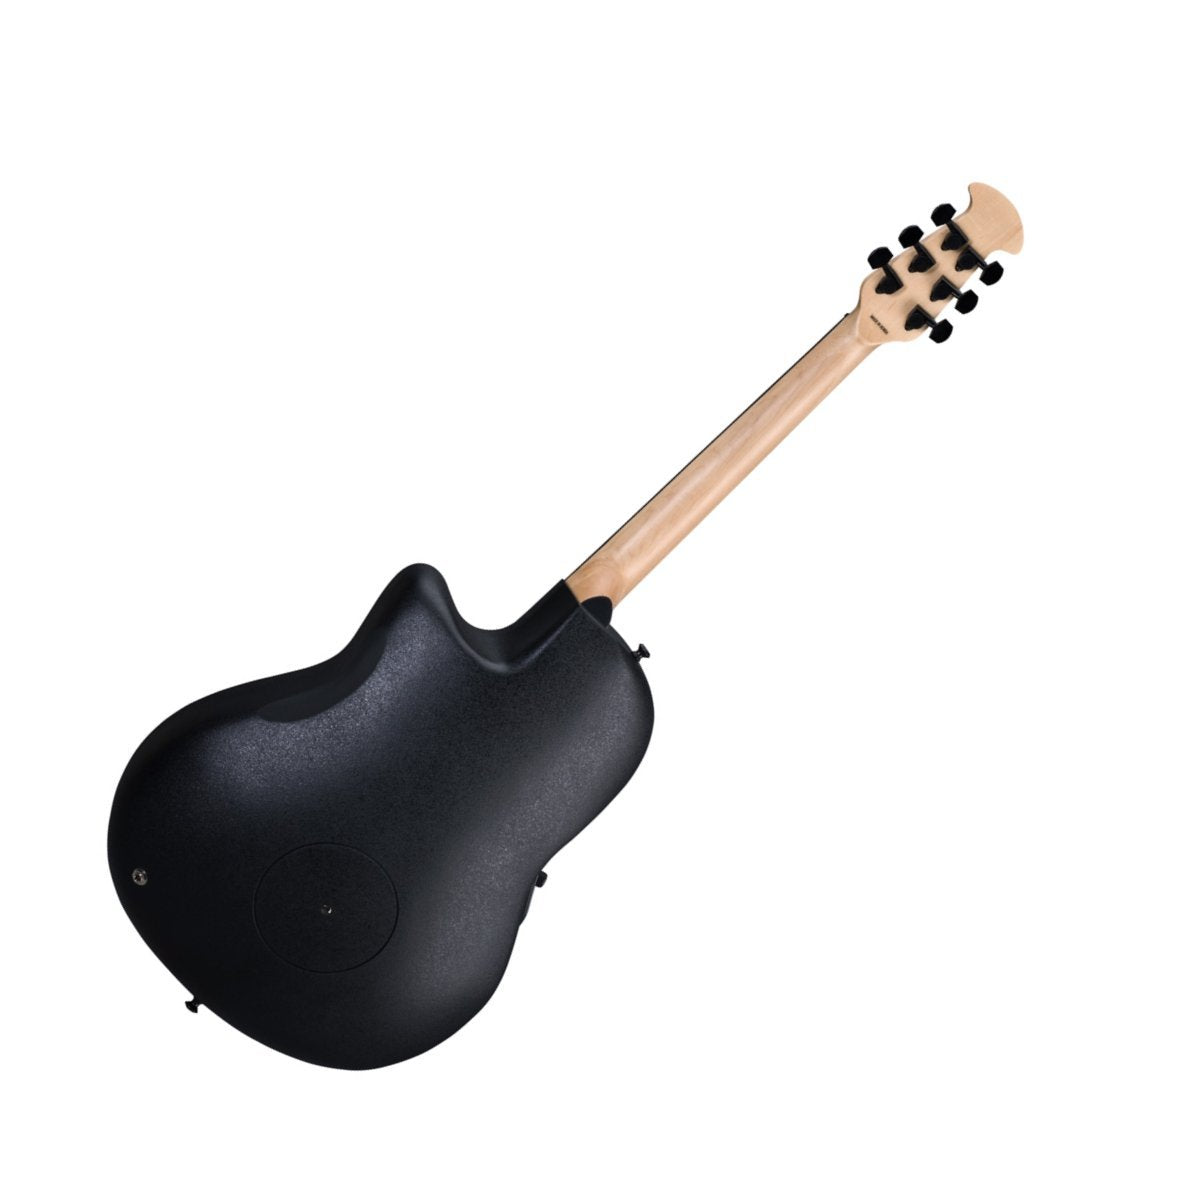 Ovation Elite Black Acoustic-Electric Guitar 1778TX-5